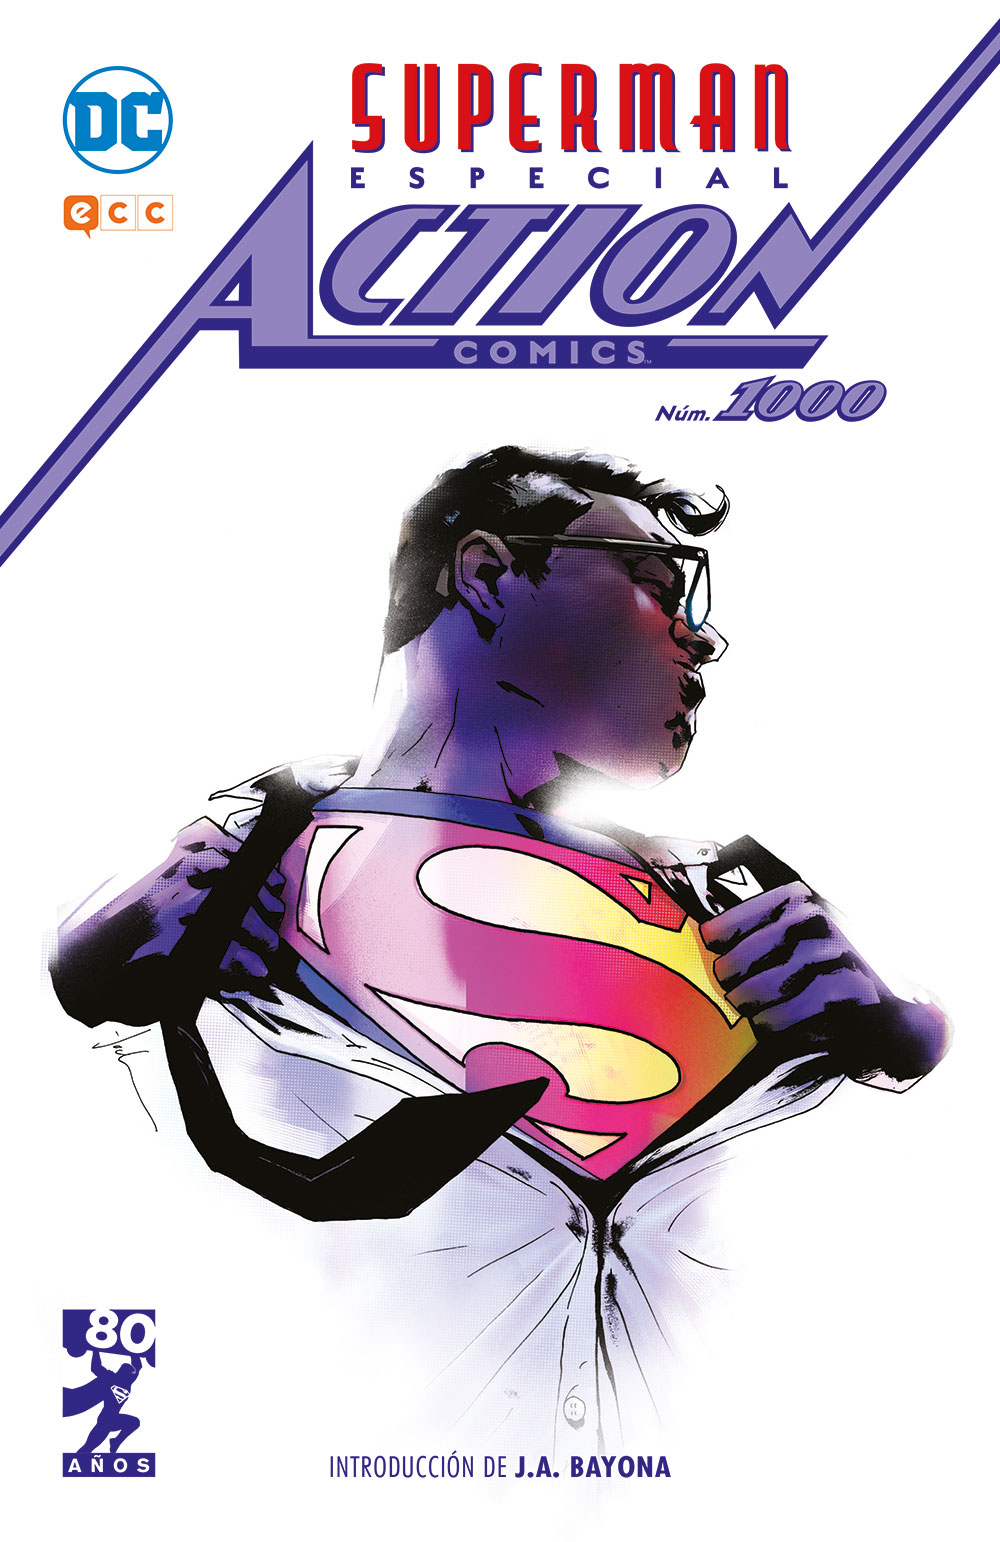 Superman especial action nº 1000